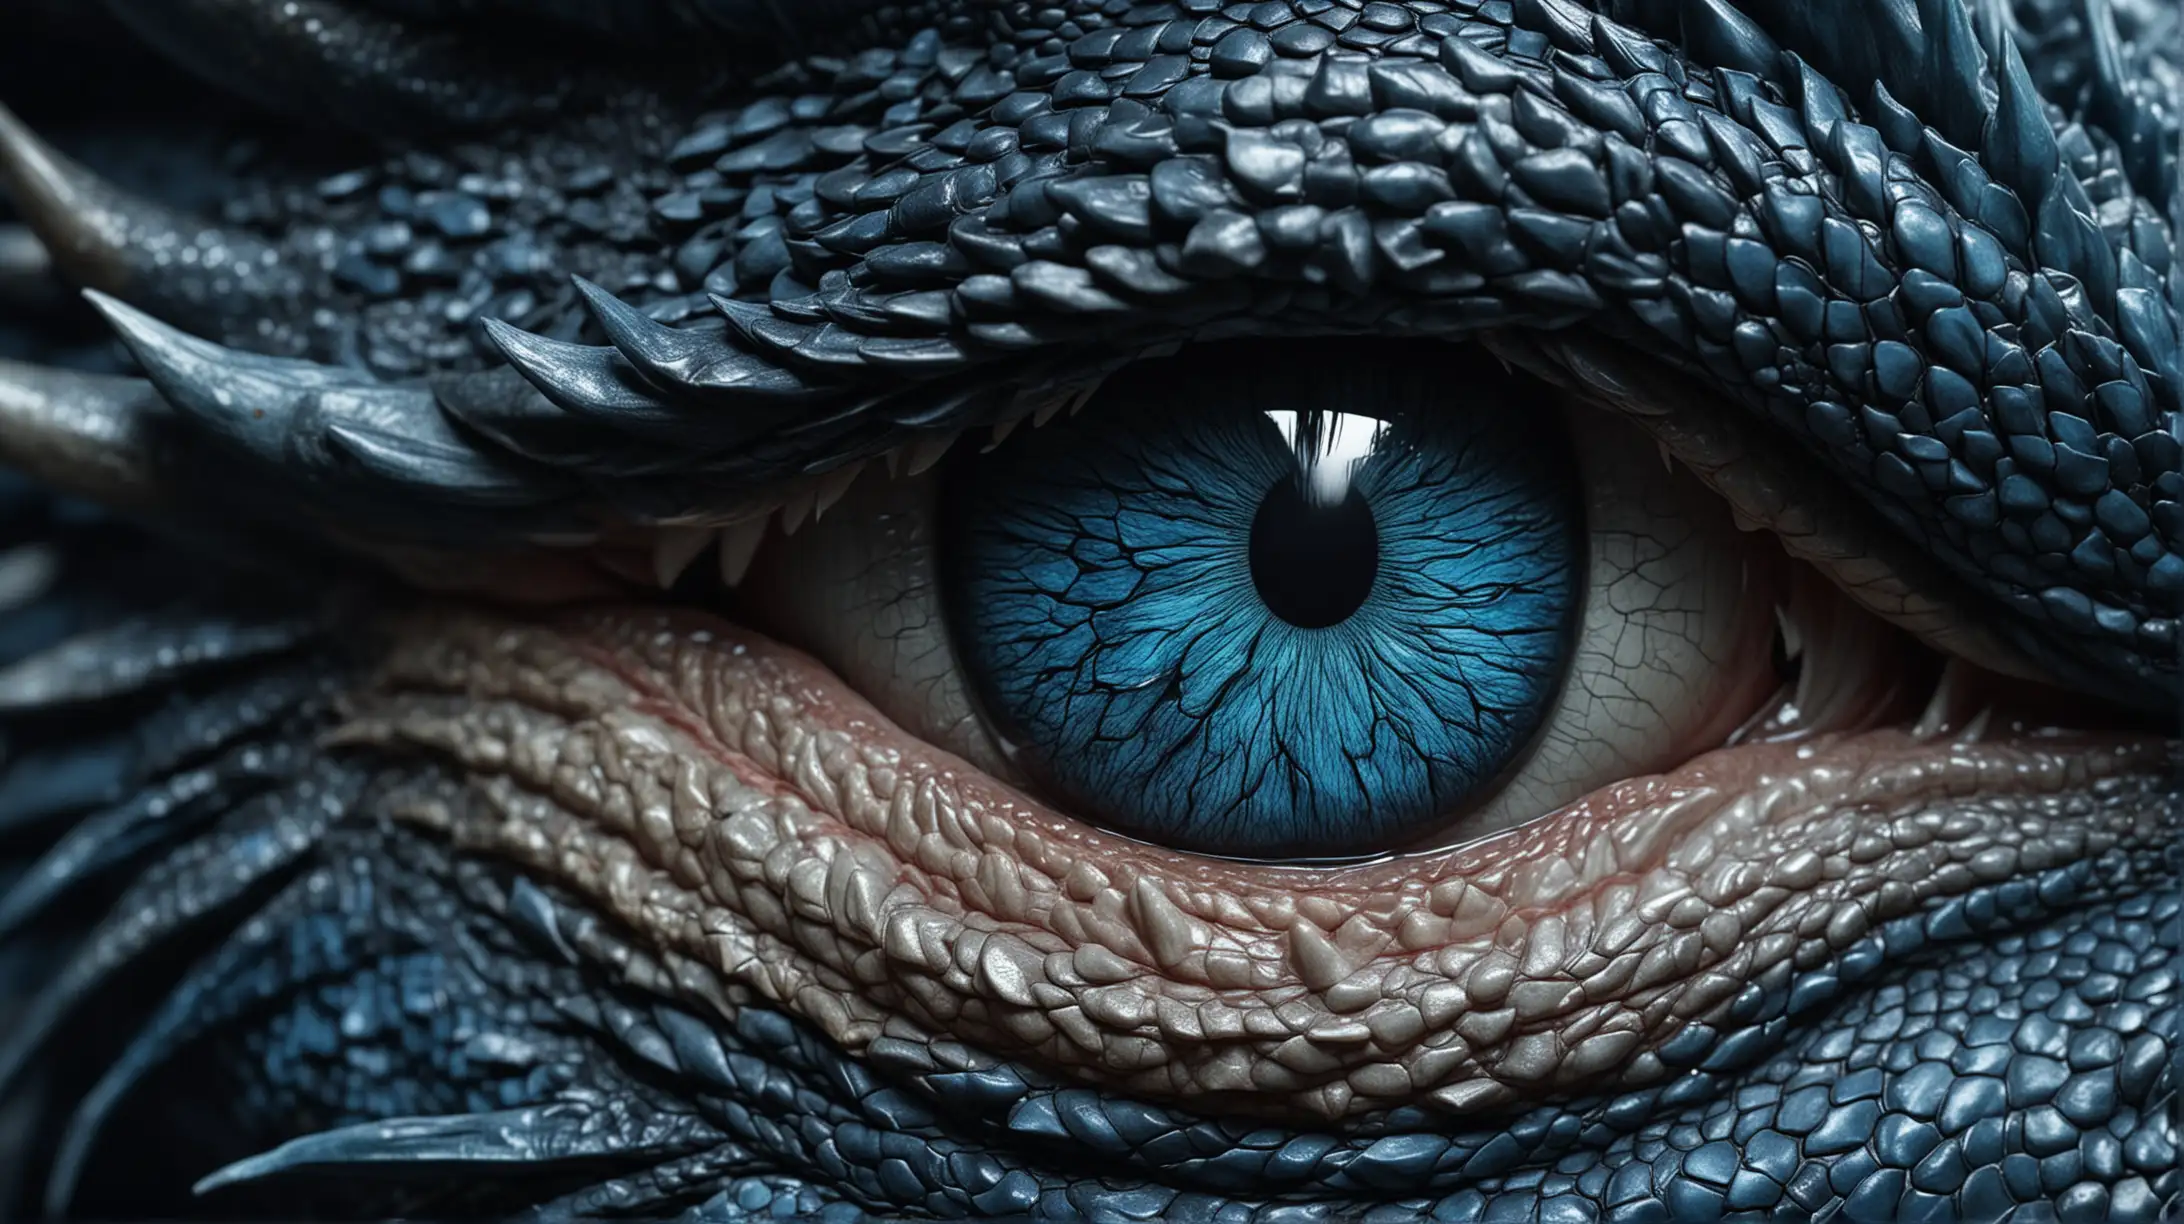 l'oeil d'un dragon, bleu foncé hyperréaliste de haute qualité, 8K Ultra HD.